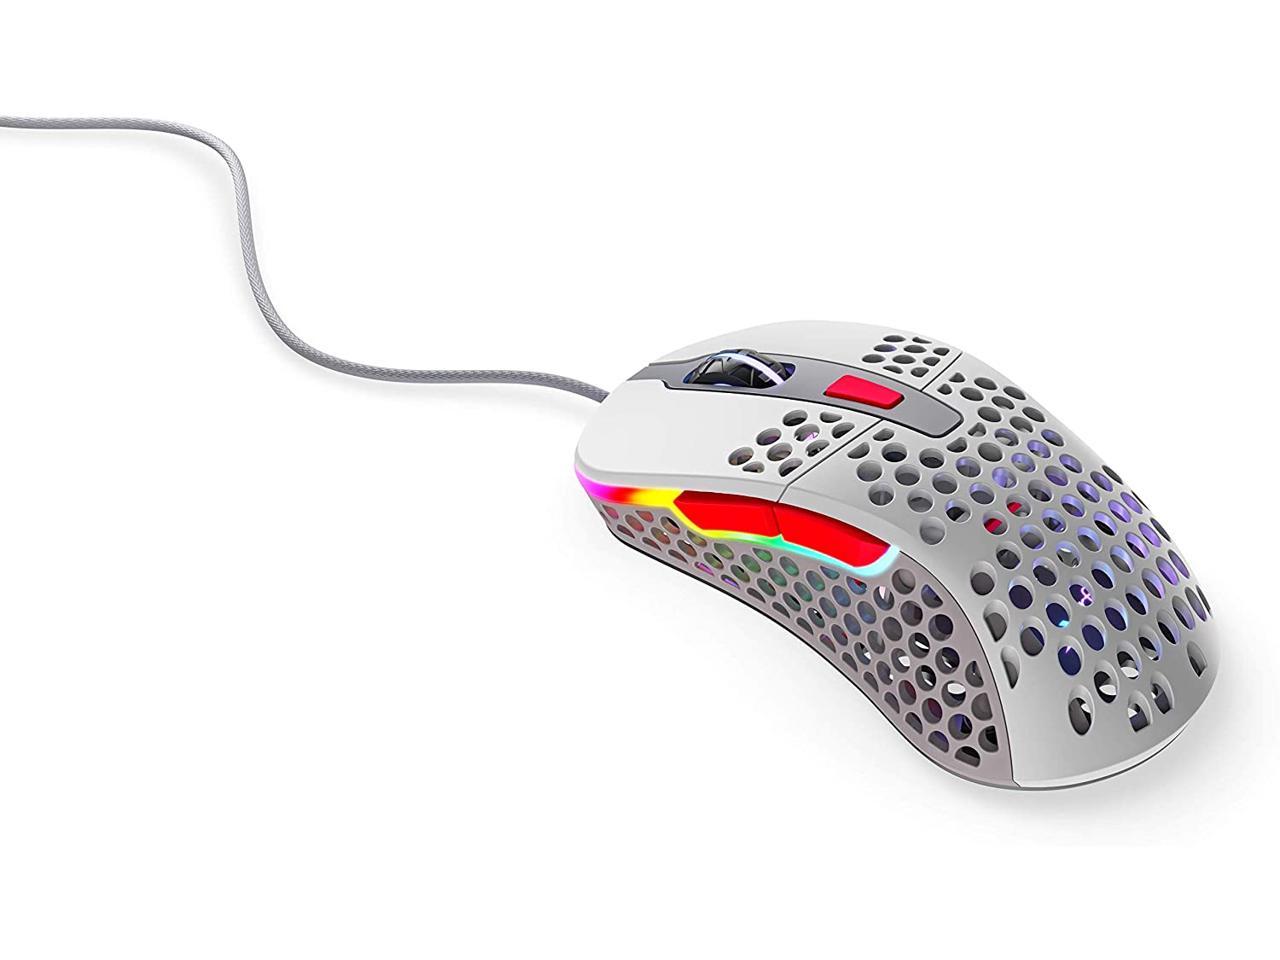 Xtrfy M4 Rgb Ultra Light Gaming Mouse Retro Newegg Com